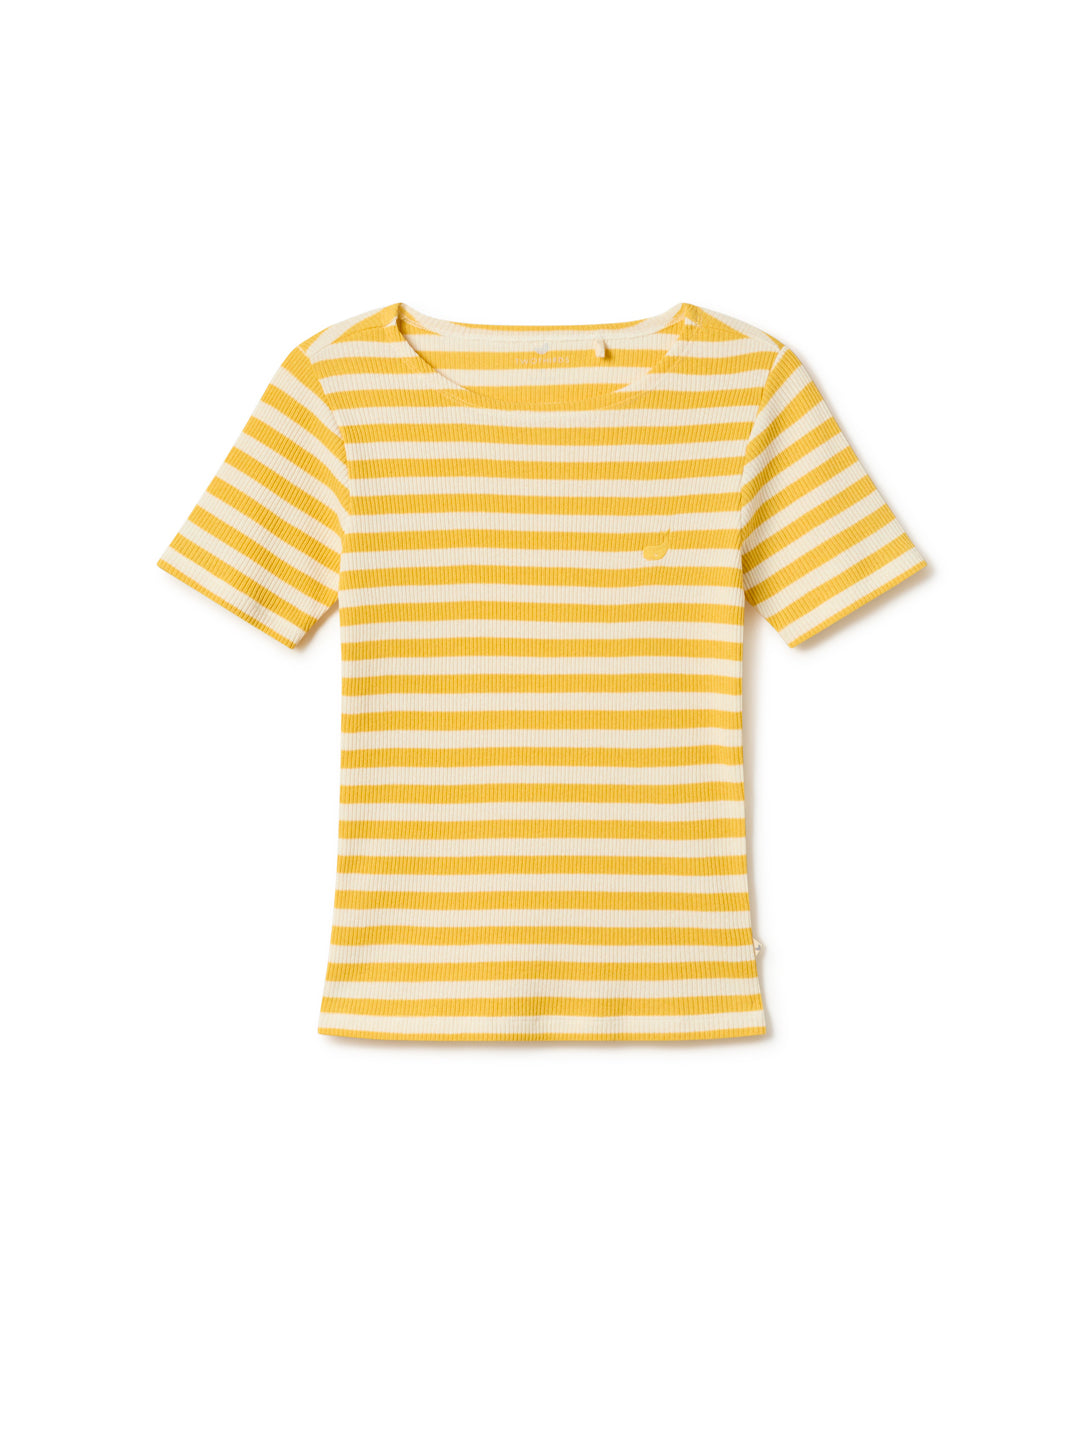 Gorgo - Yellow Stripes